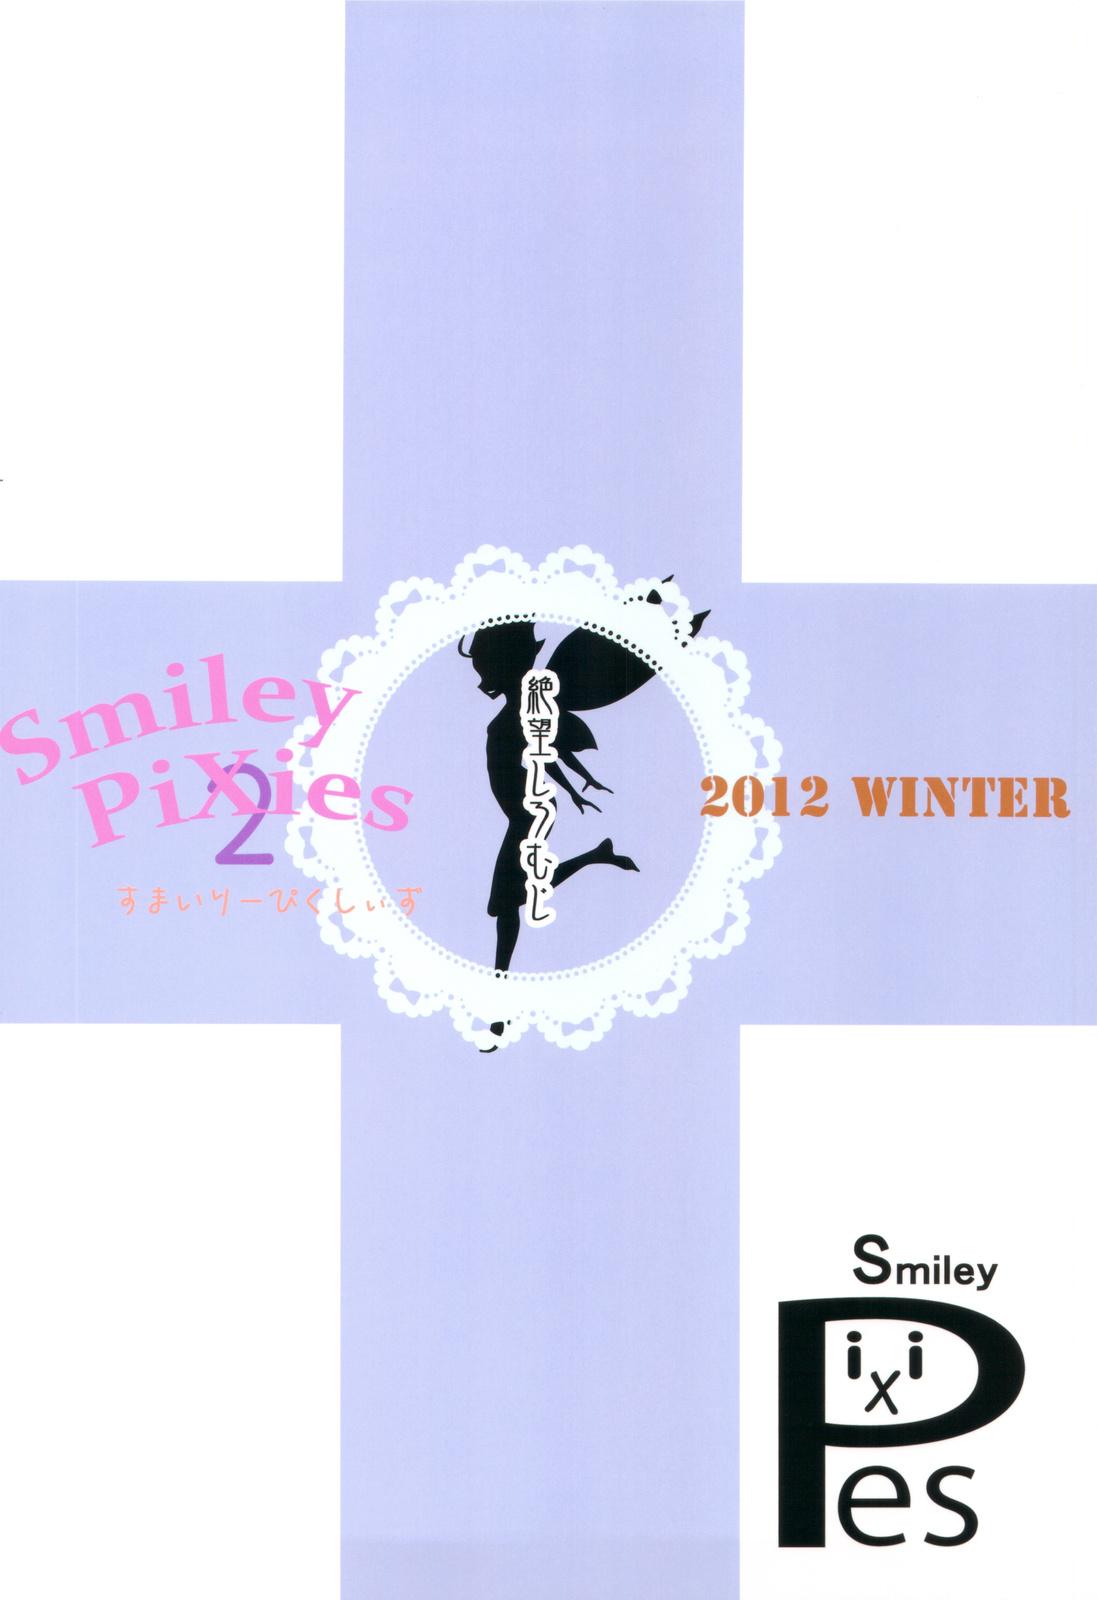 Smiley pixies